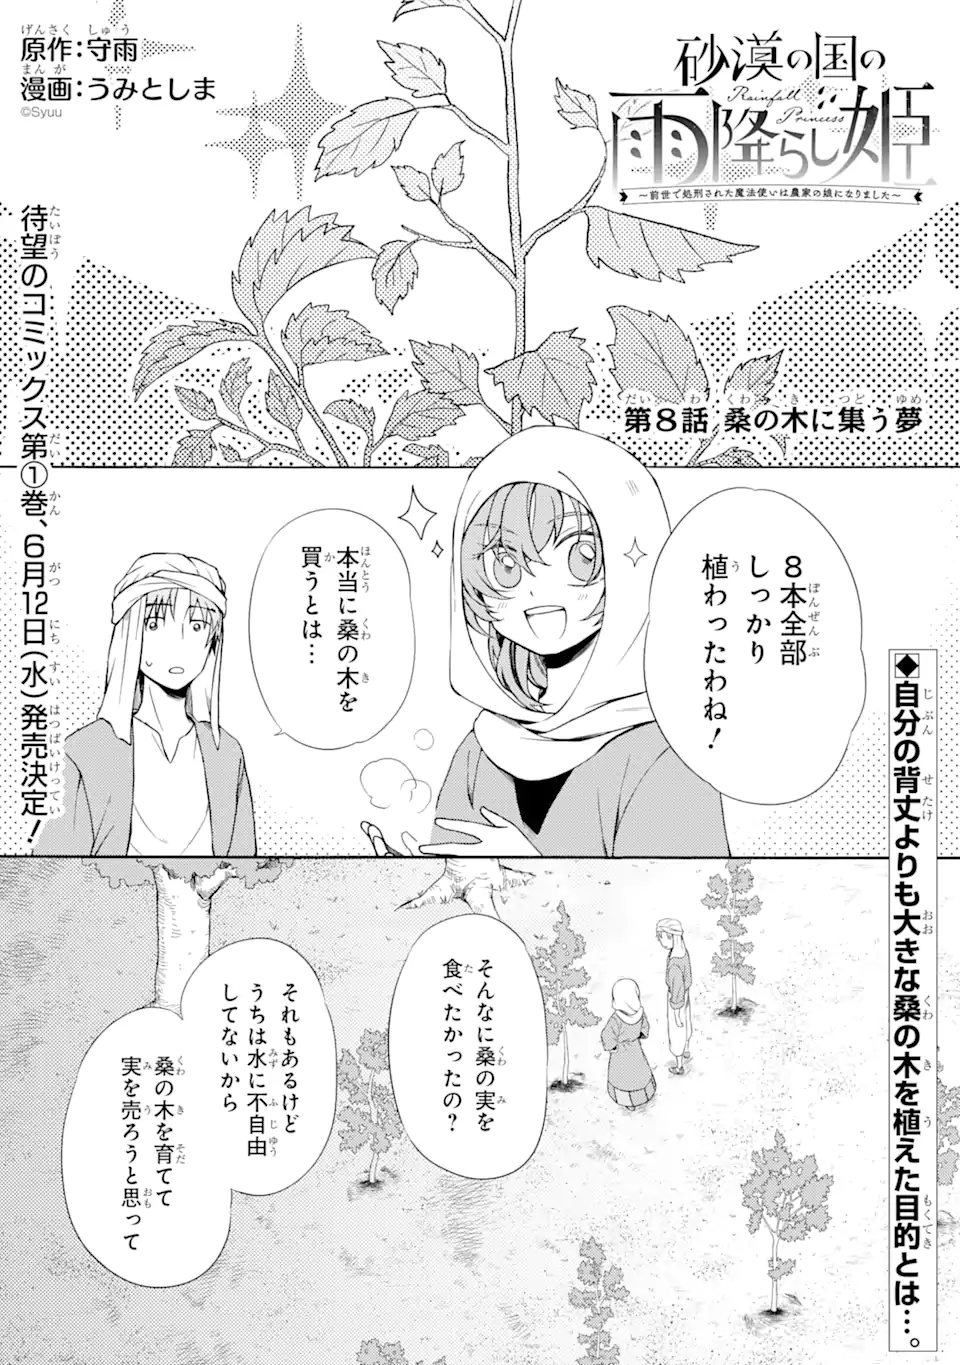 Sabaku no Kuni no Ame Furashi Hime - Chapter 8.1 - Page 1